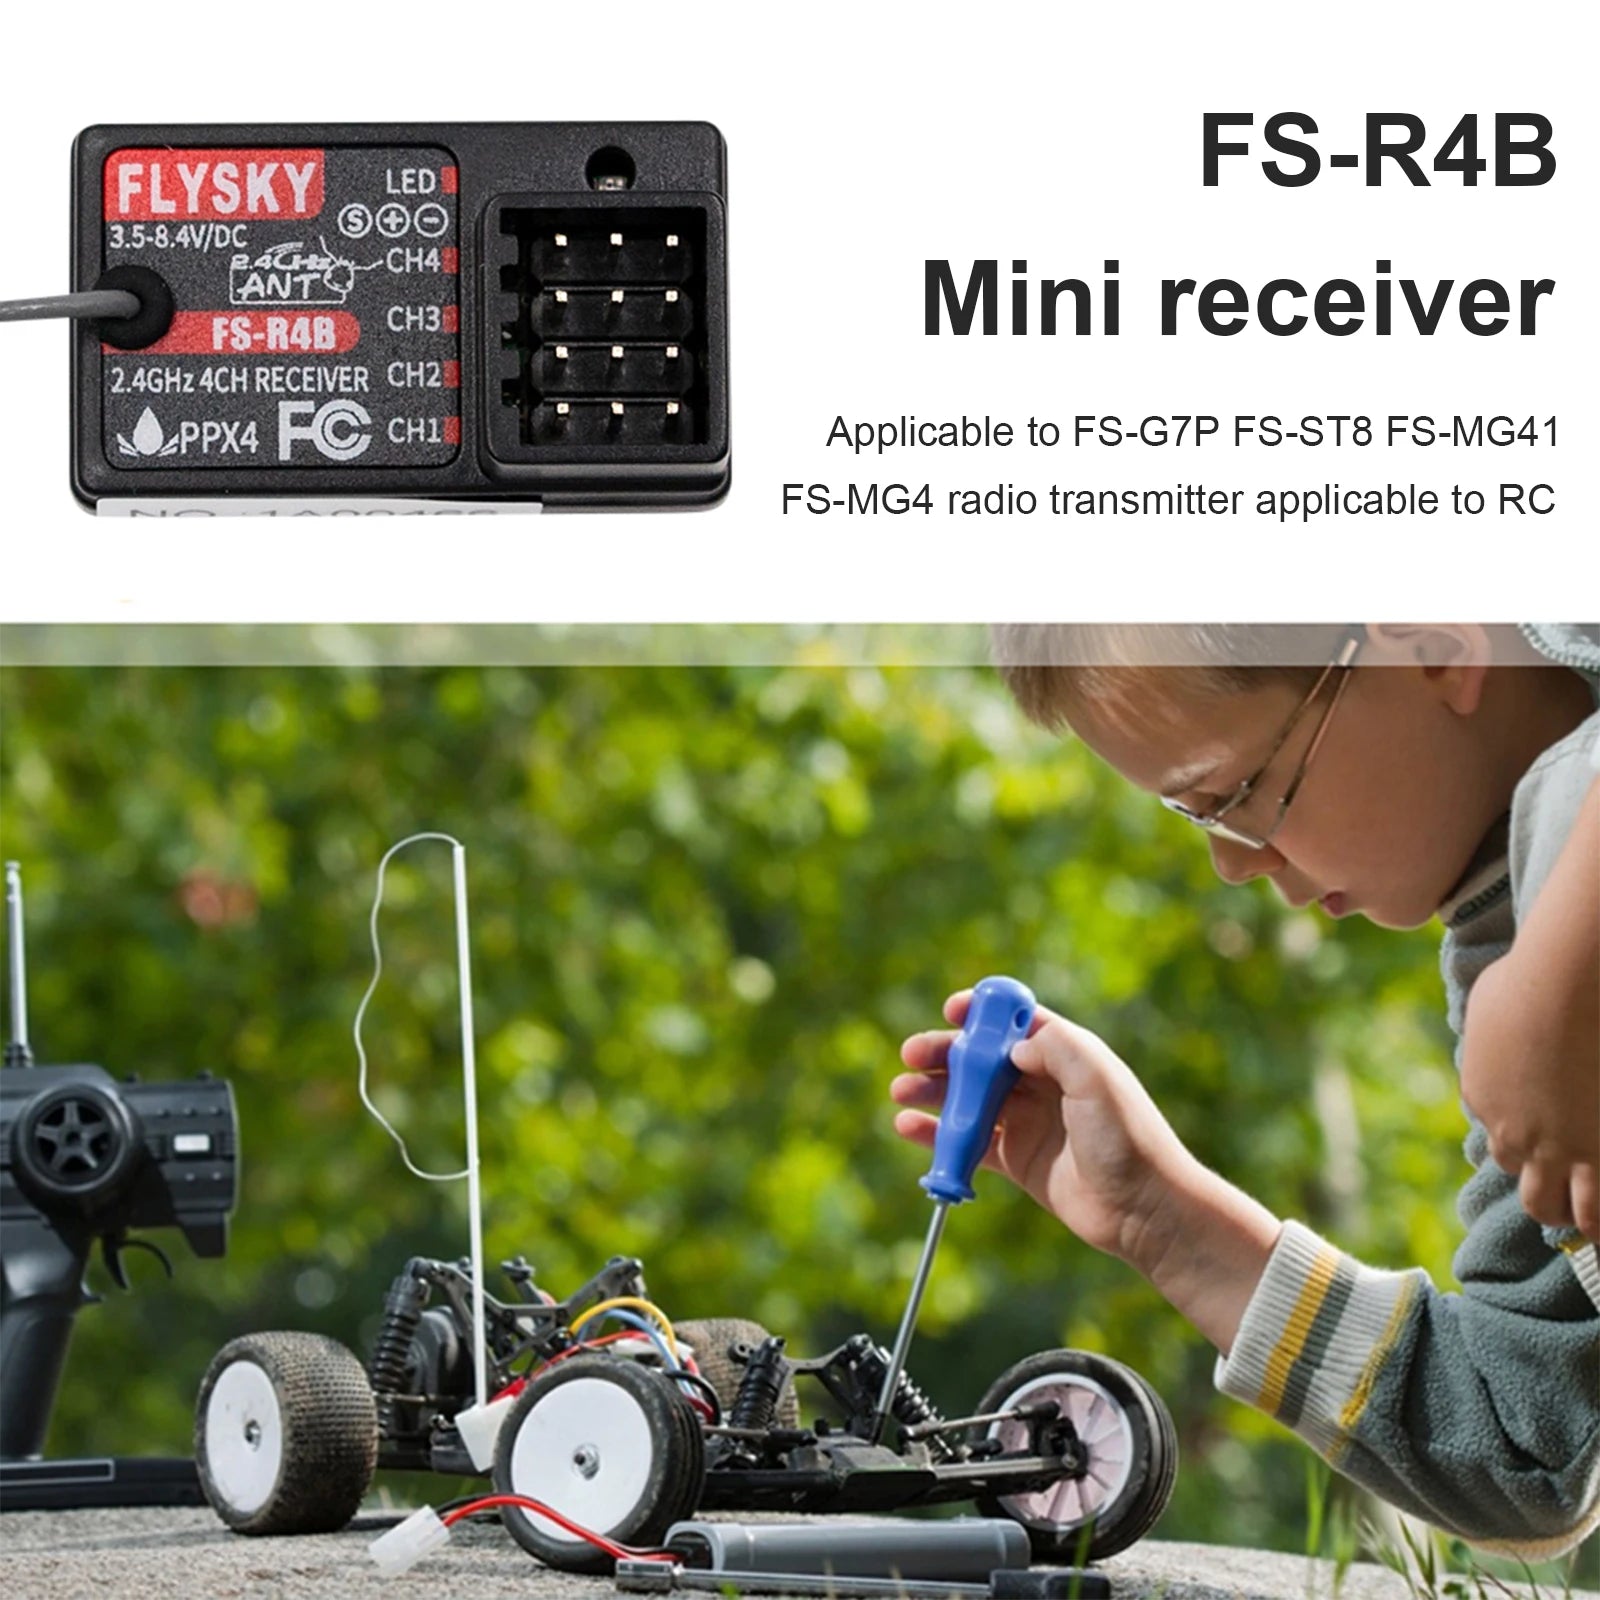 Flysky FS-R4B 4CH 2.4G Digital Receiver, FLYSKY LED FS-R4B 3.5-8.4VIDC Eant